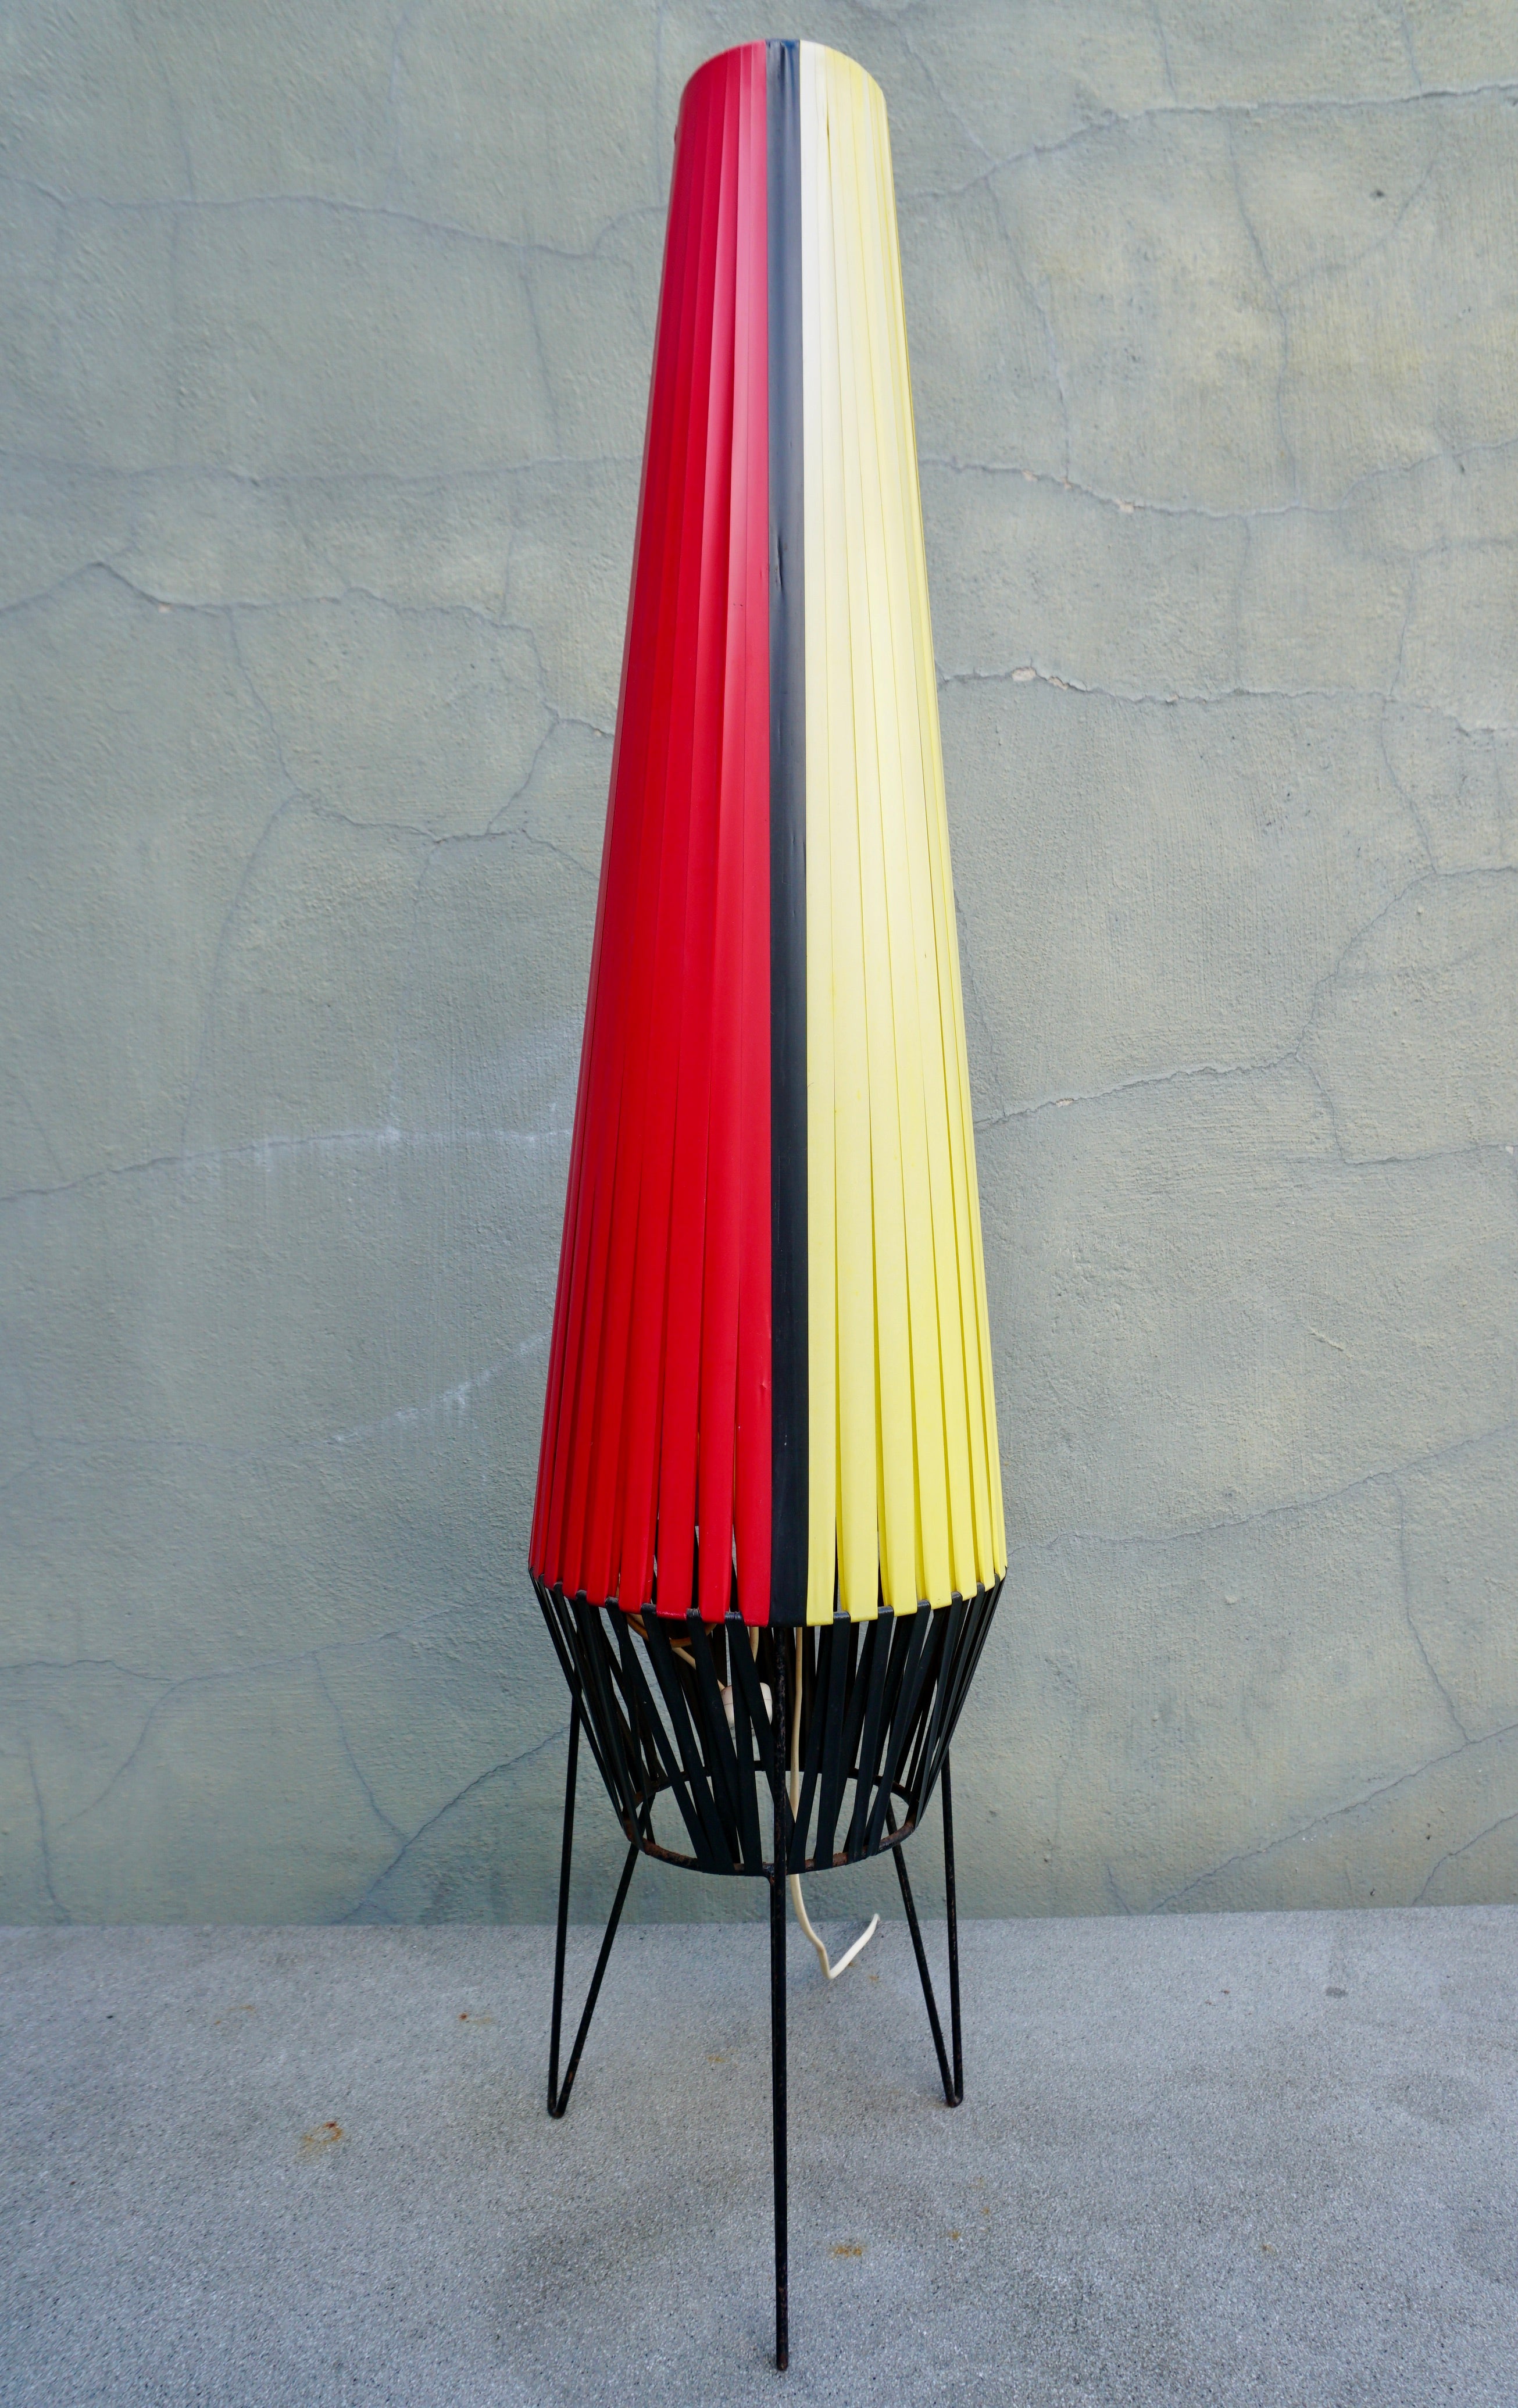 Lampadaire Rocket avec sangles en plastique rouge, violet, jaune et noir sur un trépied en métal noir.

Hauteur 41.3